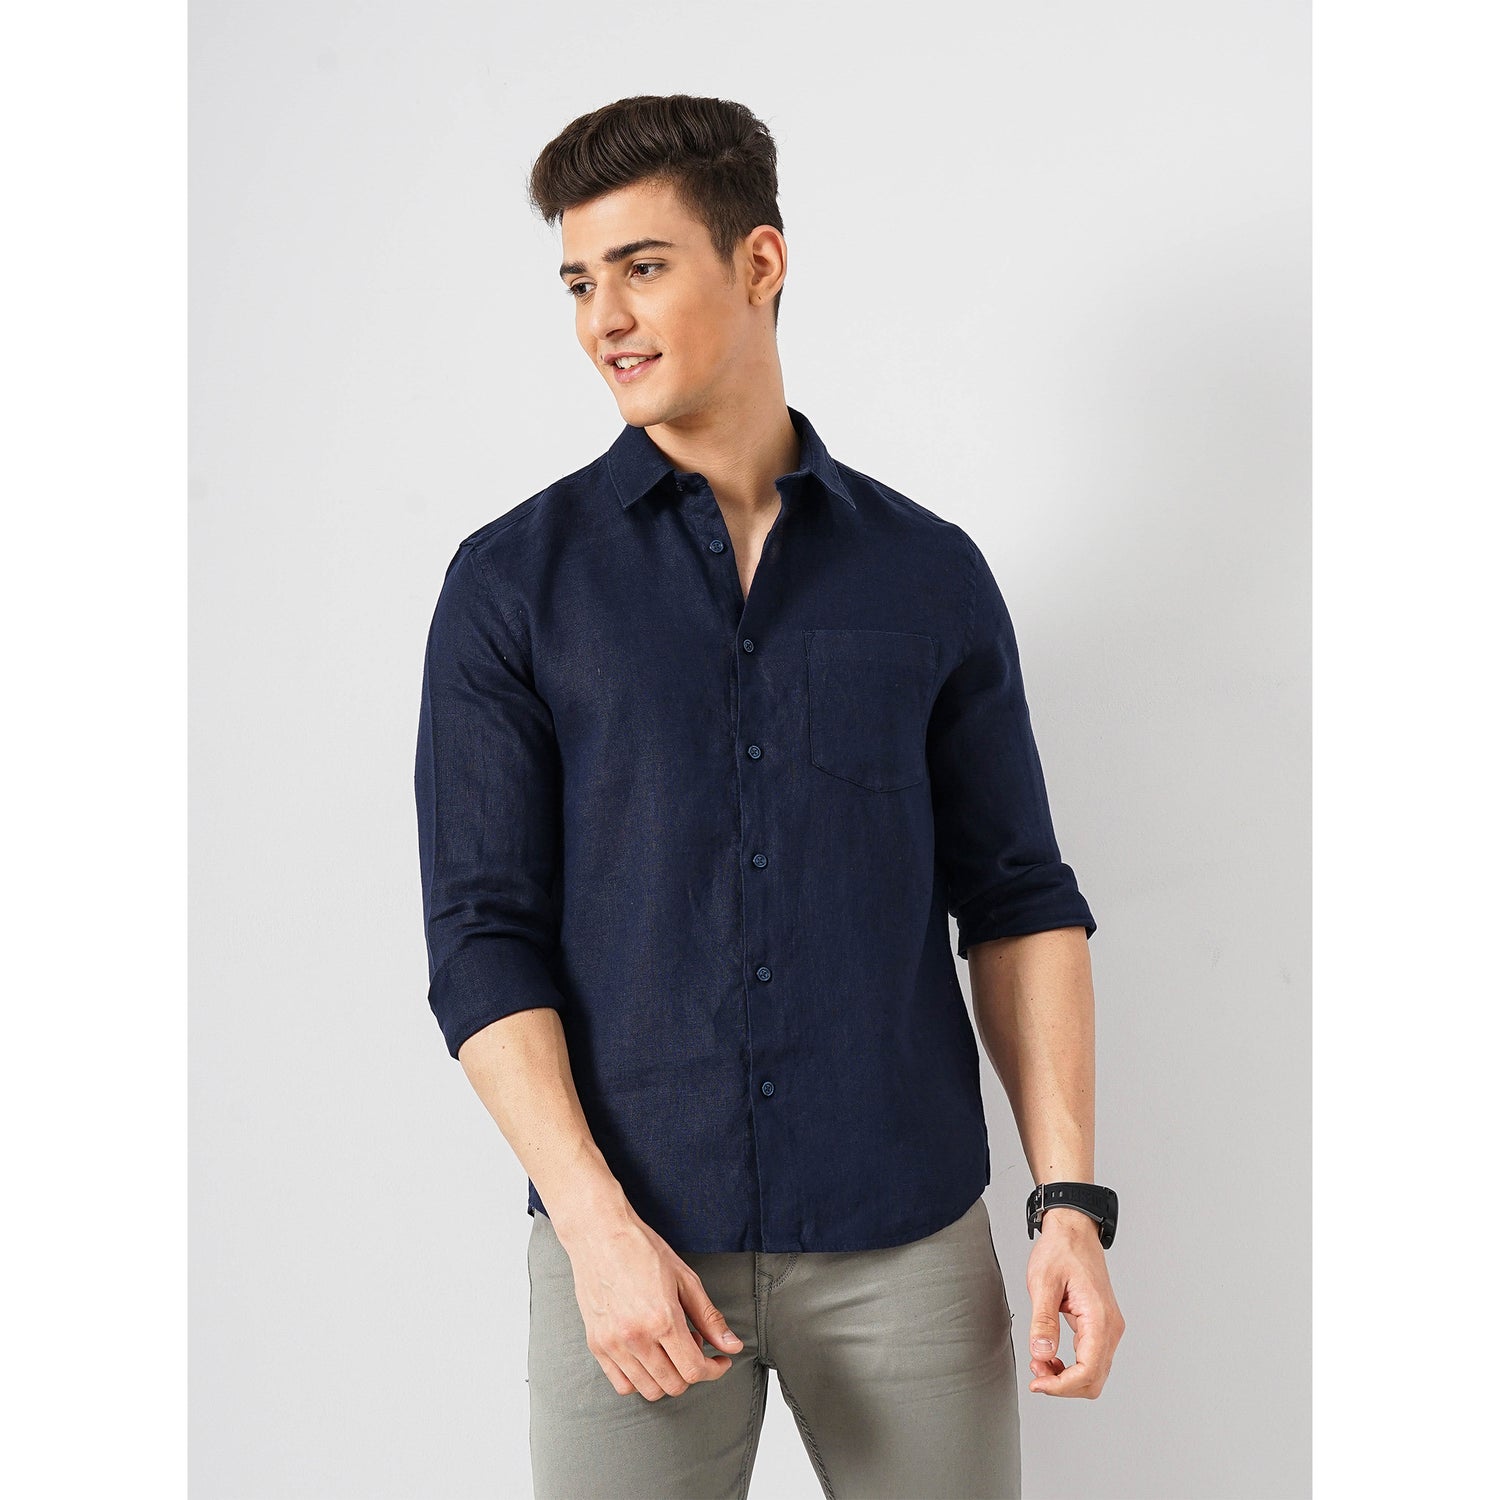 Men Navy Blue Spread Collar Solid Regular Fit Linen Shirt (DAFLIX3)